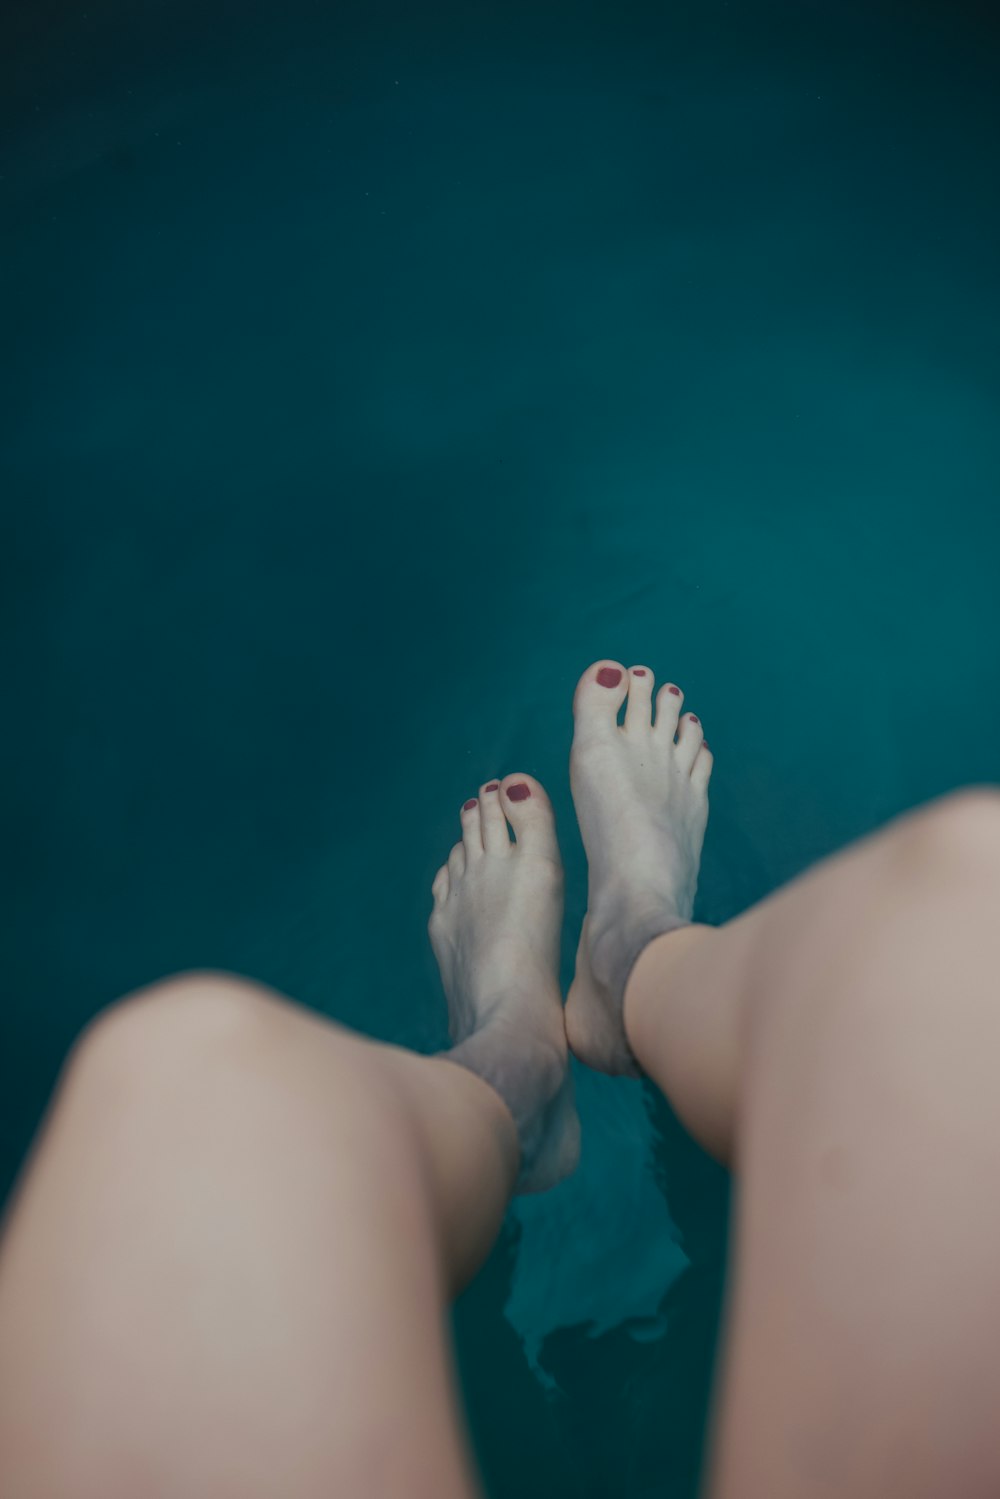 Personen Füße auf blauem Wasser